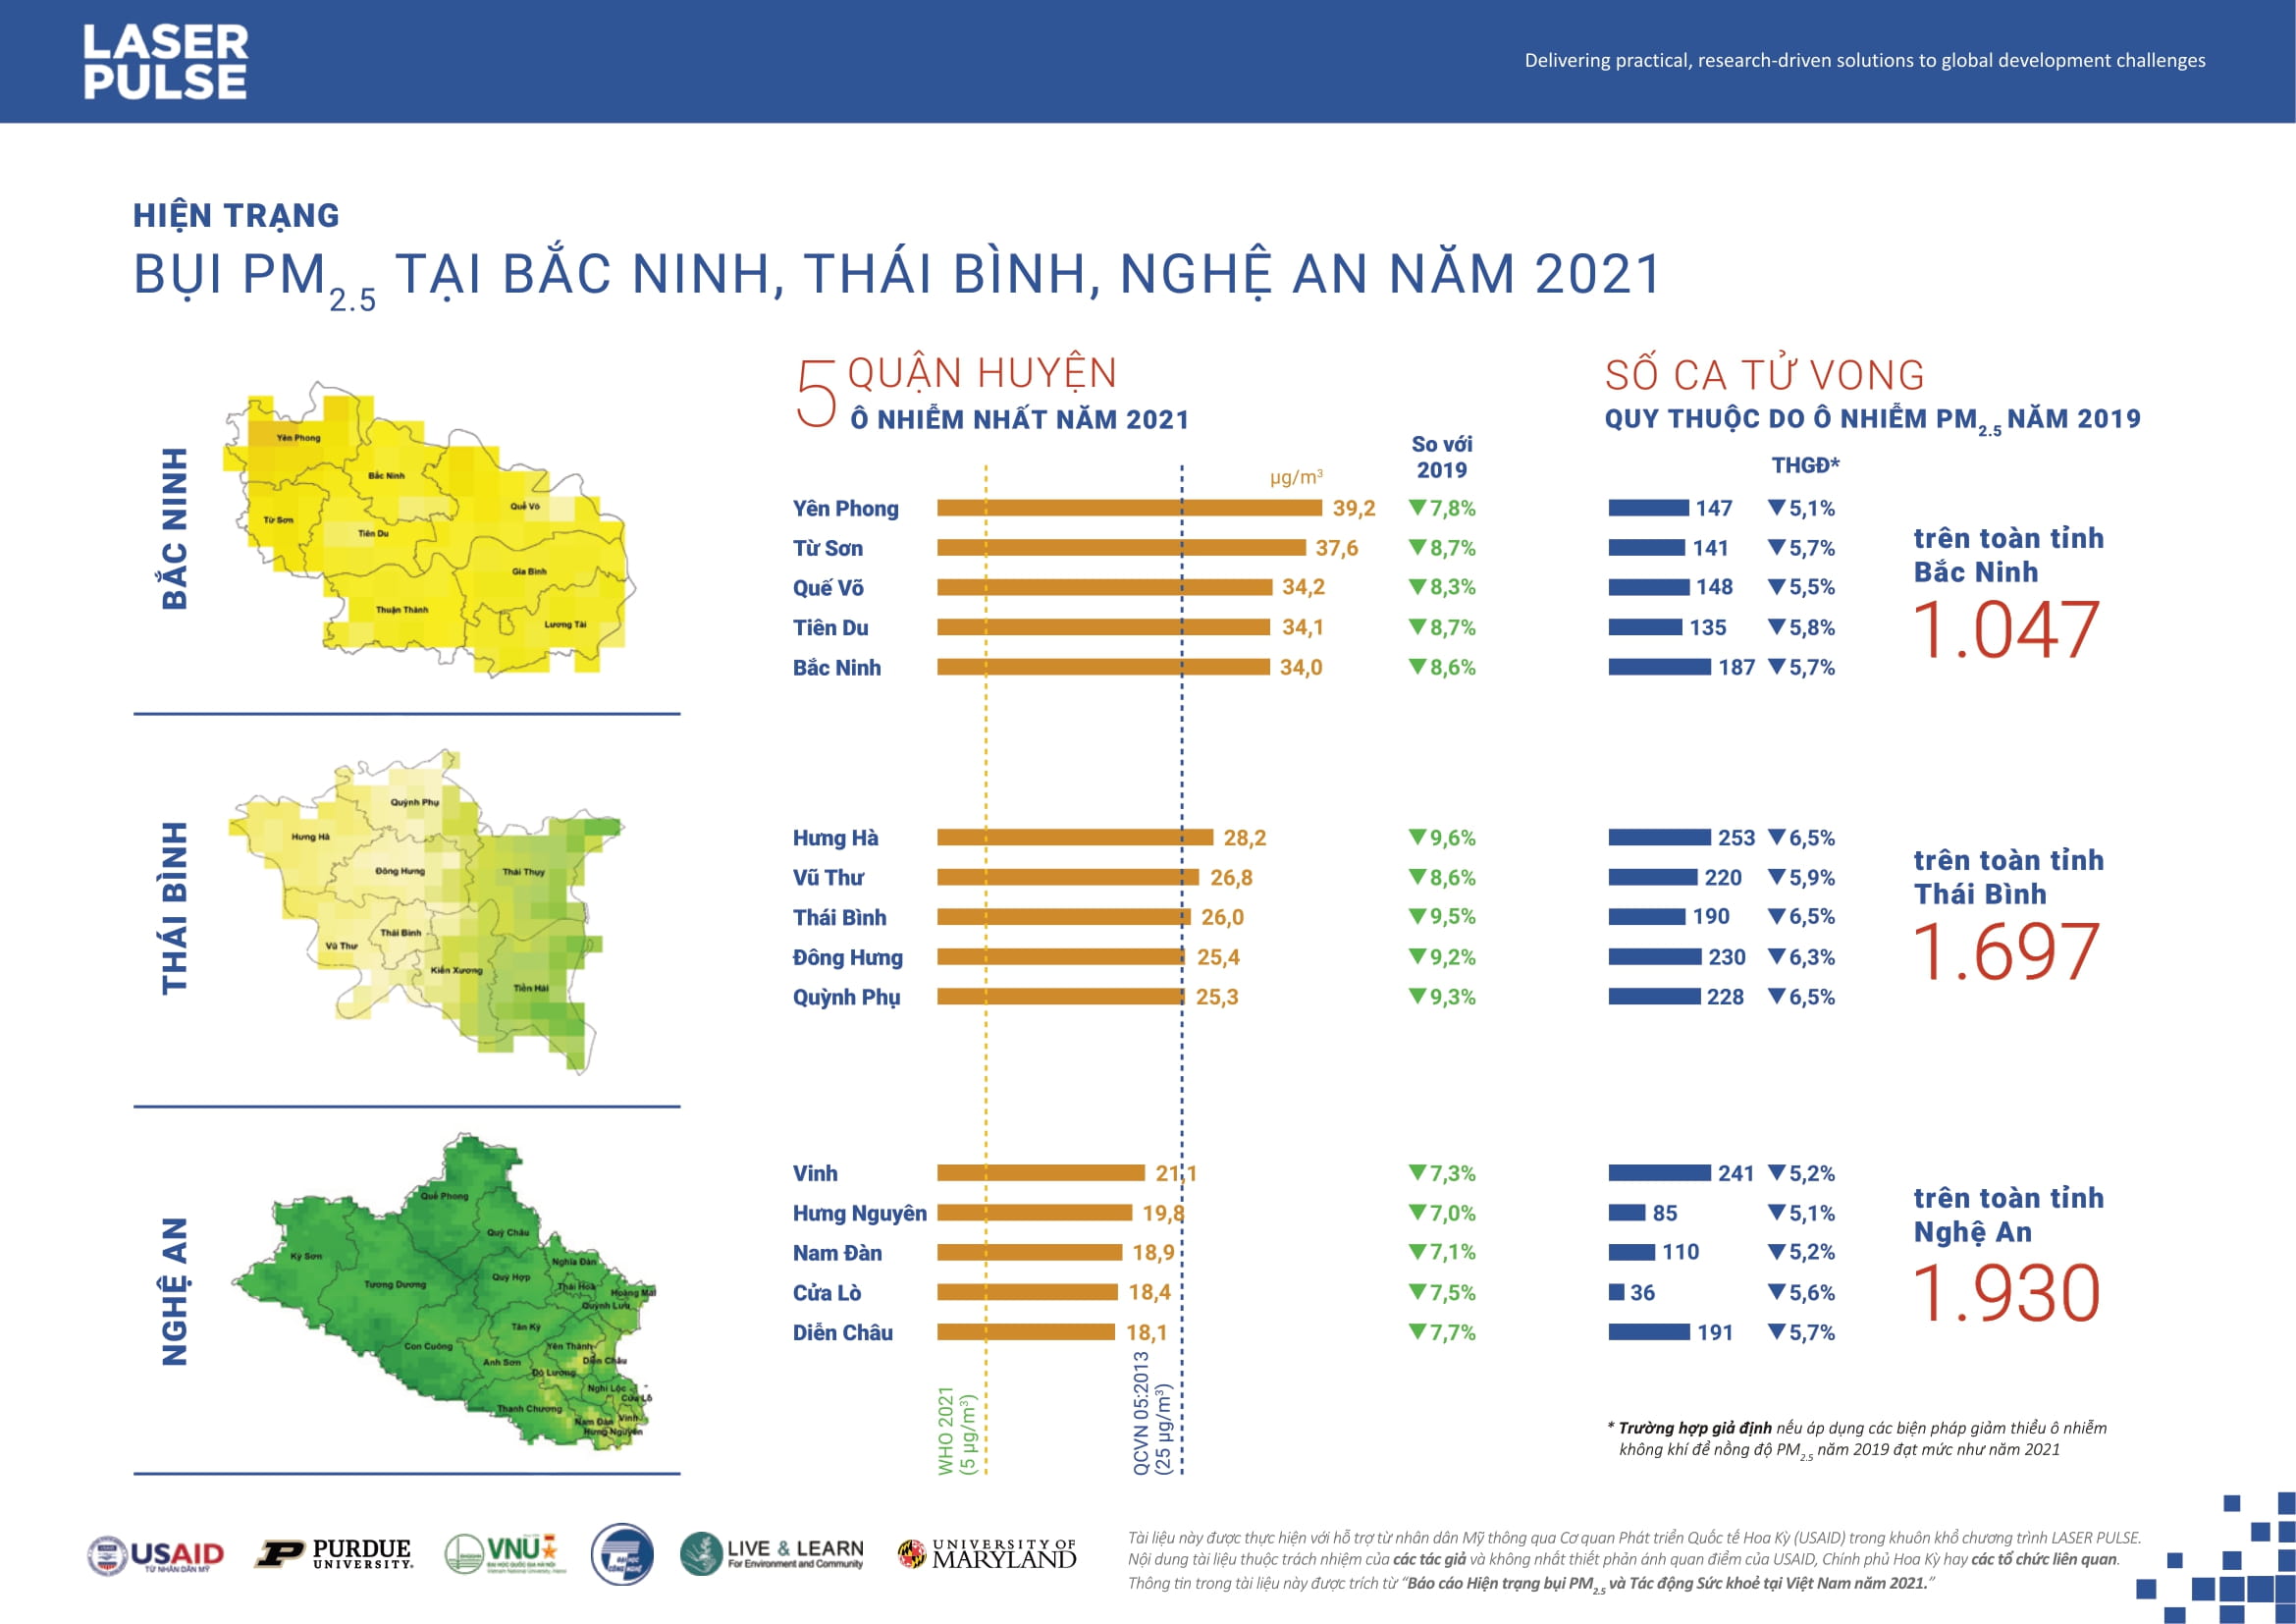 Hiện trạng bụi PM2.5 ở các tỉnh Bắc Ninh, Thái Bình, Nghệ An năm 2021